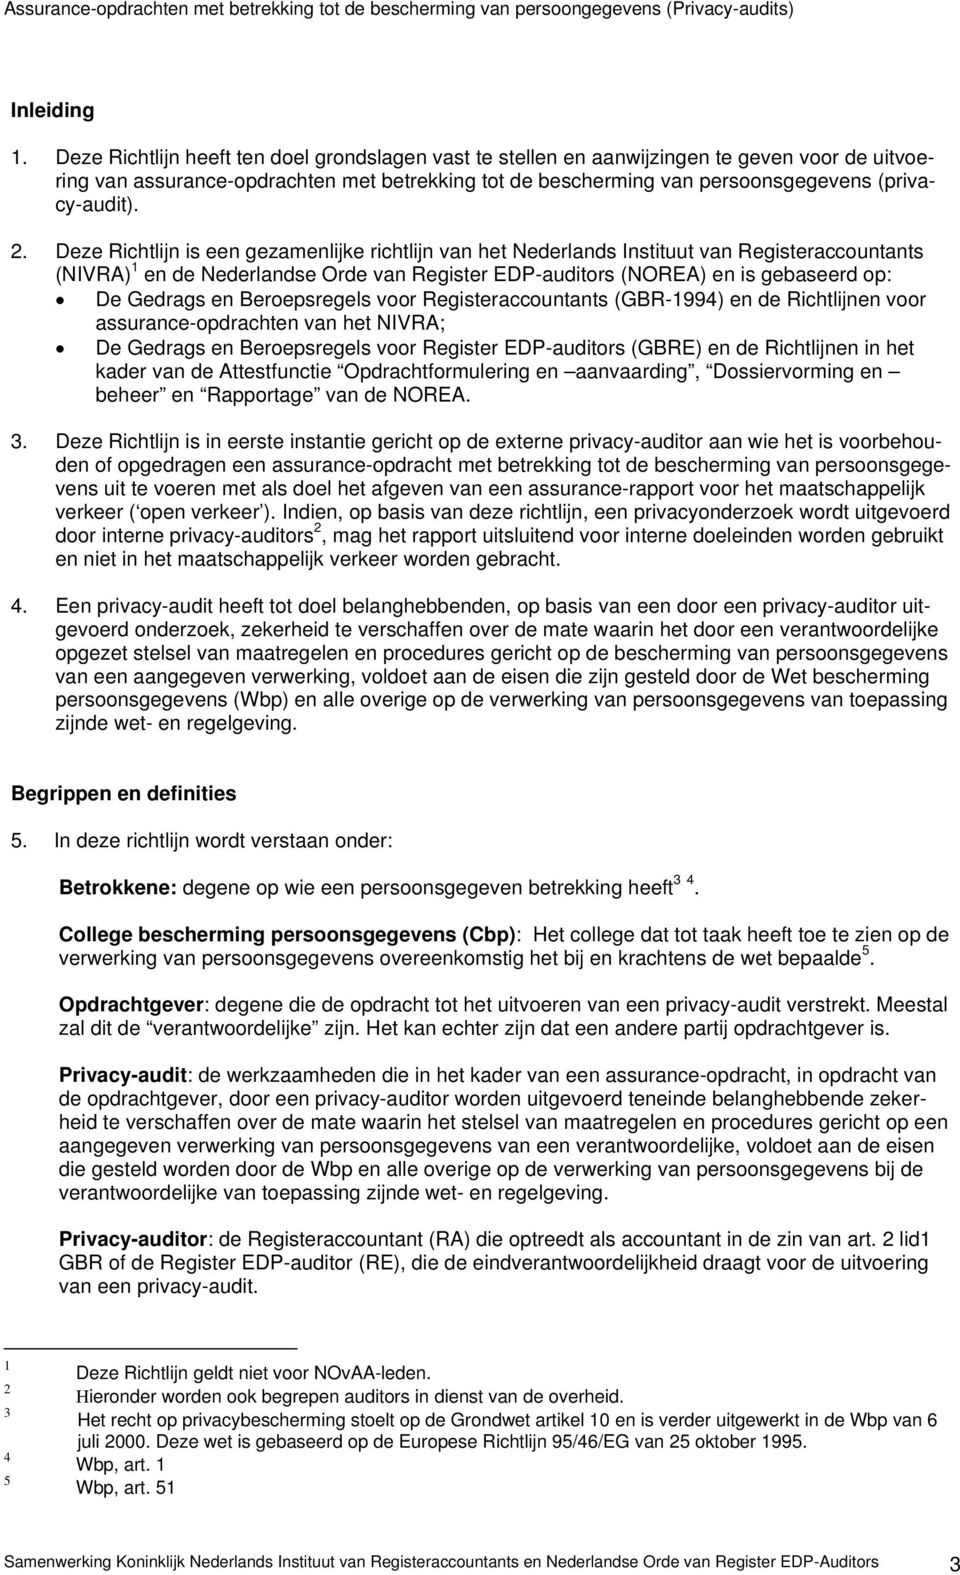 2. Deze Richtlijn is een gezamenlijke richtlijn van het Nederlands Instituut van Registeraccountants (NIVRA) 1 en de Nederlandse Orde van Register EDP-auditors (NOREA) en is gebaseerd op: De Gedrags